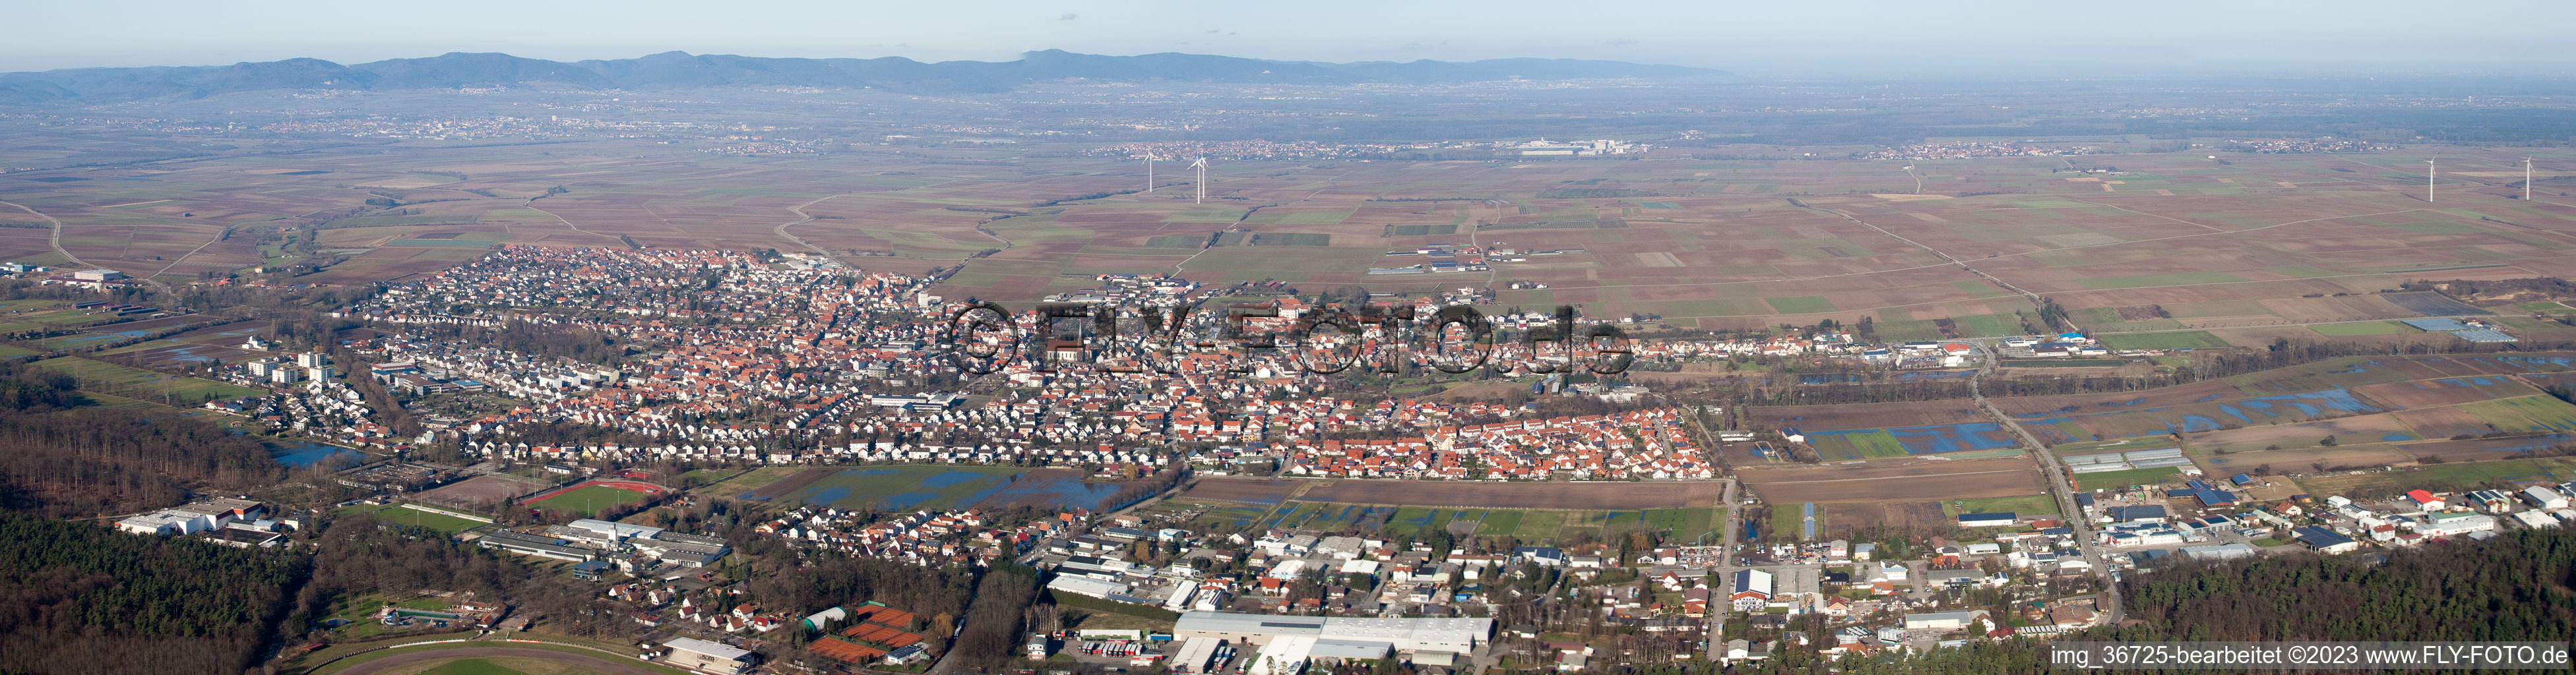 Panorama im Ortsteil Herxheim in Herxheim bei Landau/Pfalz im Bundesland Rheinland-Pfalz, Deutschland